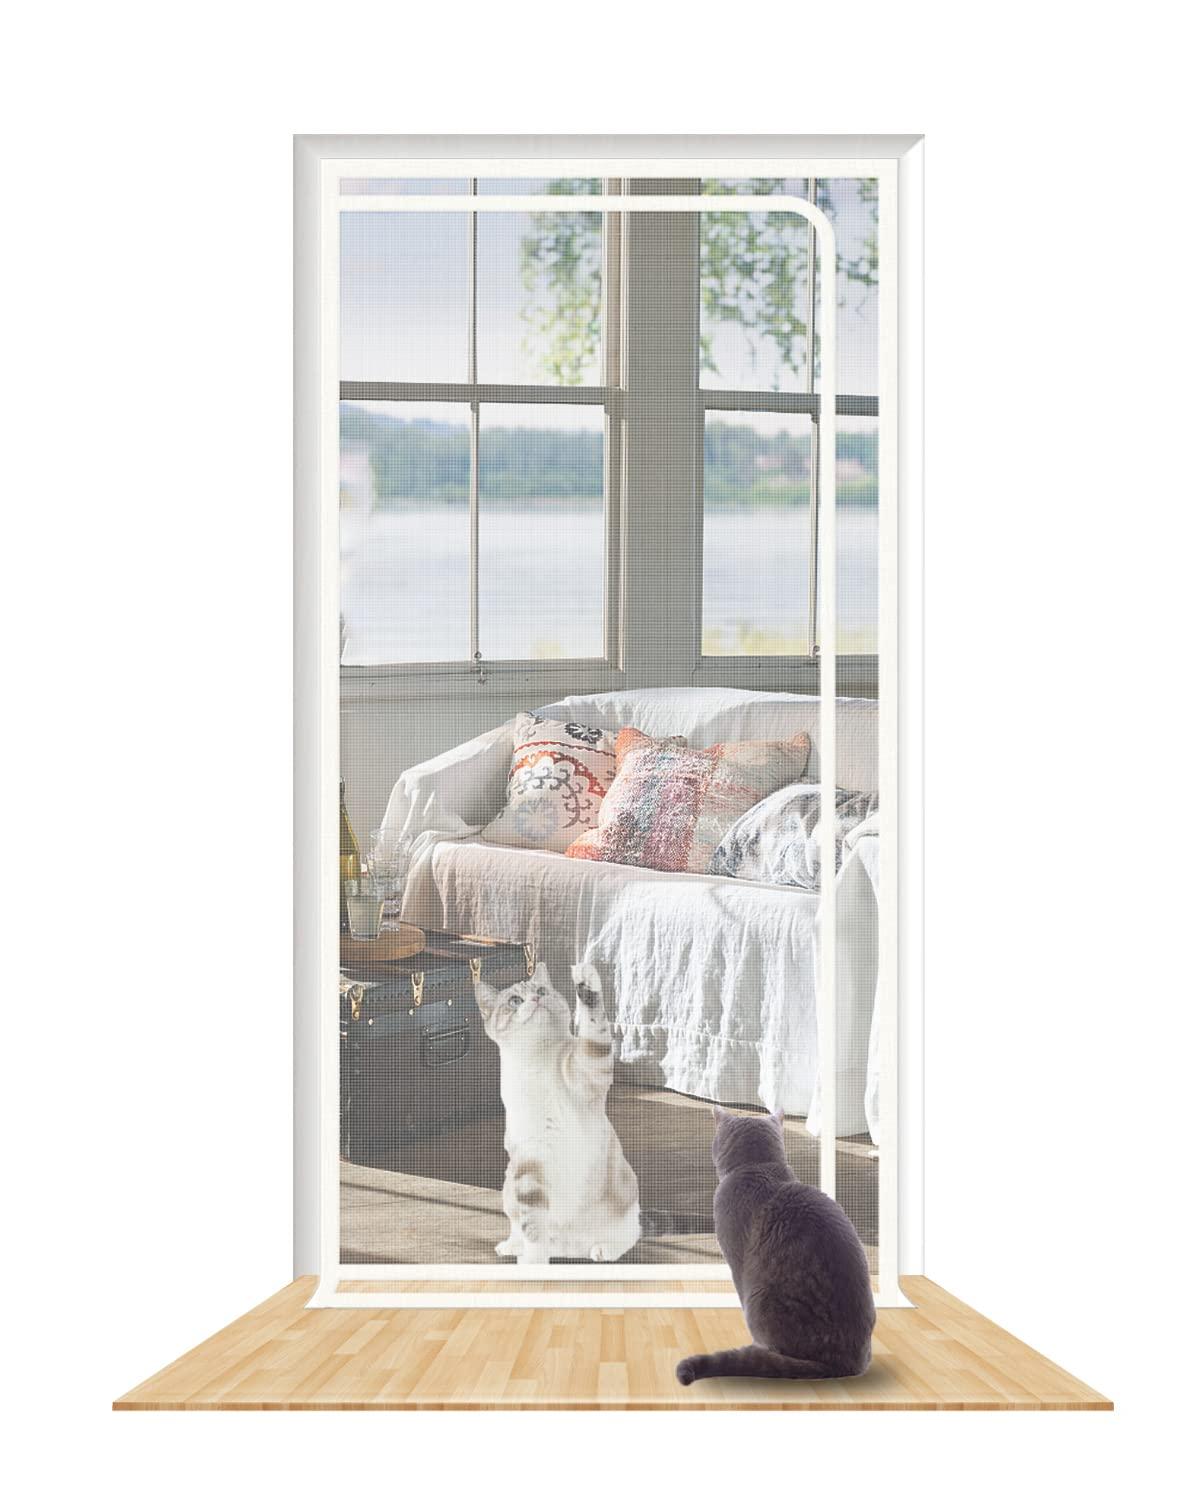 Shrrl Reinforced Cat Screen Door Fits Door Size 38X 83, Pet Resistant Mesh Screen Door, Pets Proof Zipper Screen Door For Living Room, Bedroom, Kitchen, Patio, Stop Cats Dogs Running Out